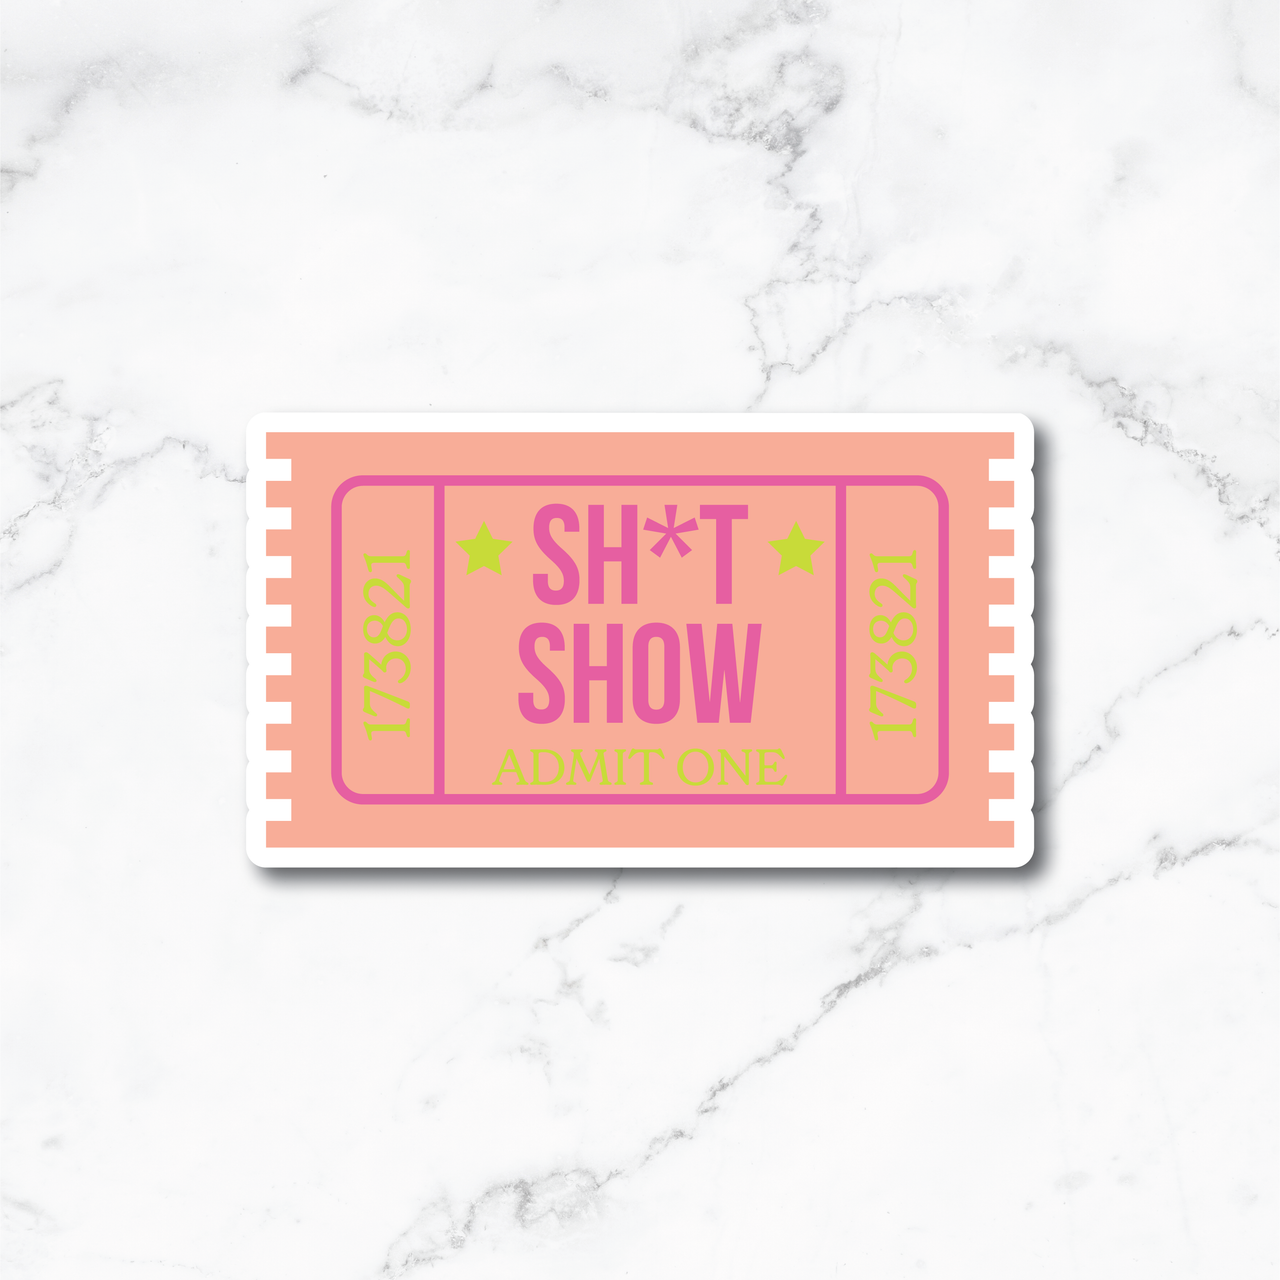 Sh*t Show Ticket Sticker